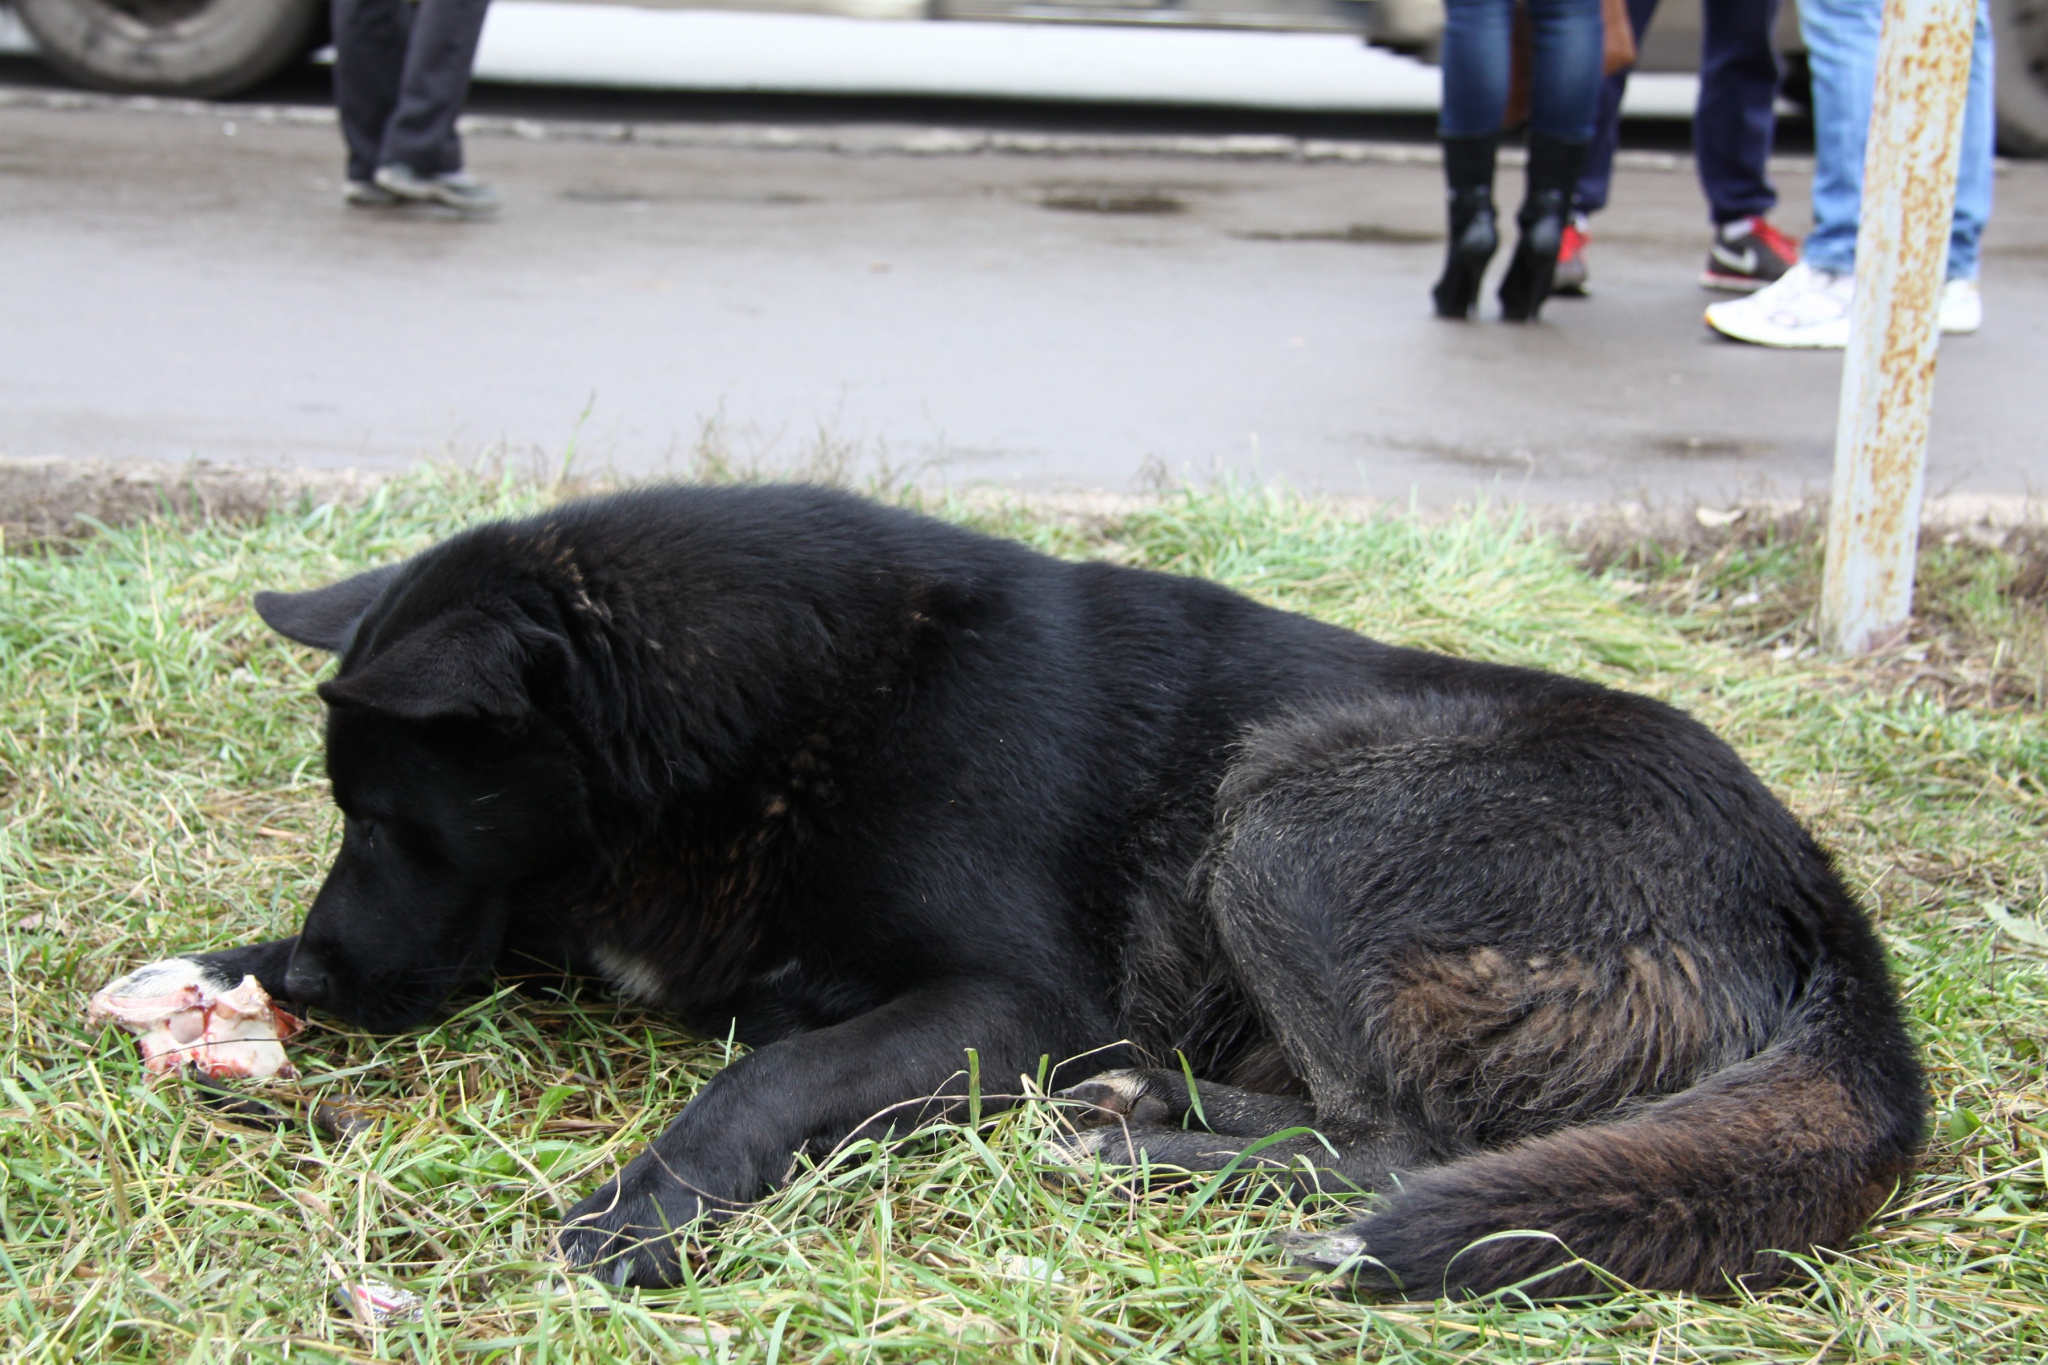 Ветеринар из Саранска: «У изнасилованной собаки могут быть смертельные травмы»